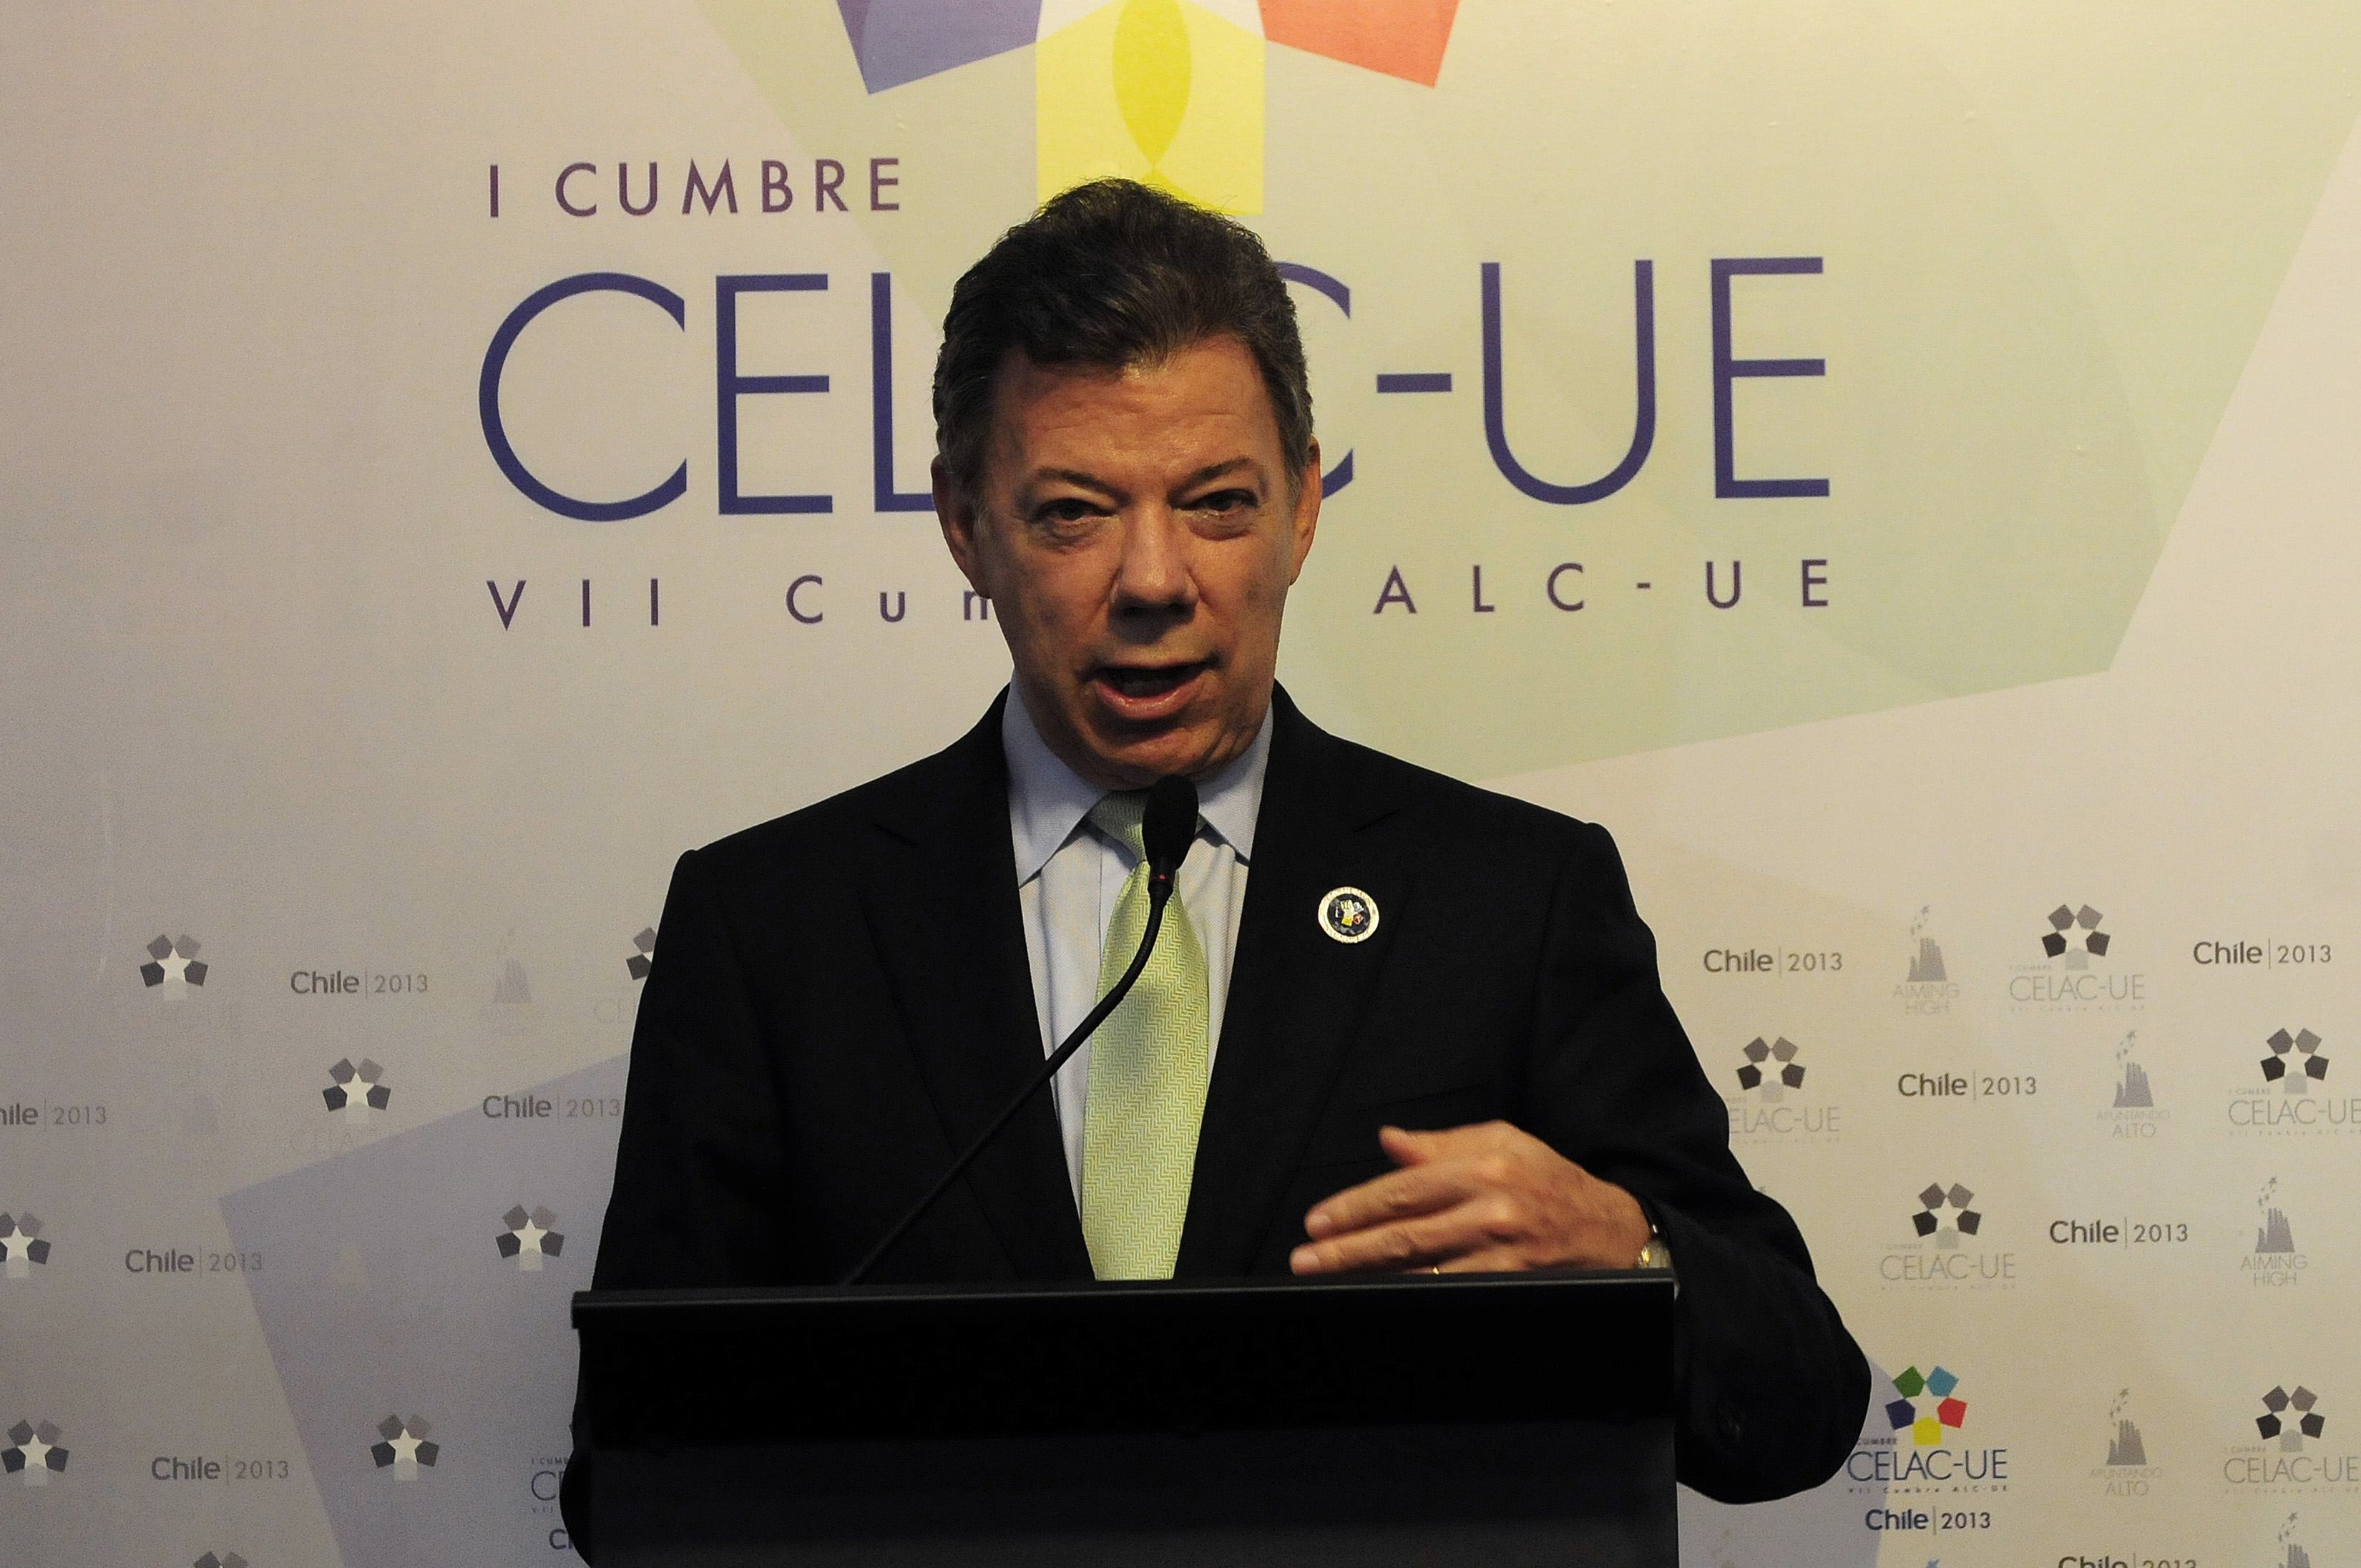 Santos condiciona eventual diálogo con ELN a liberación de canadiense